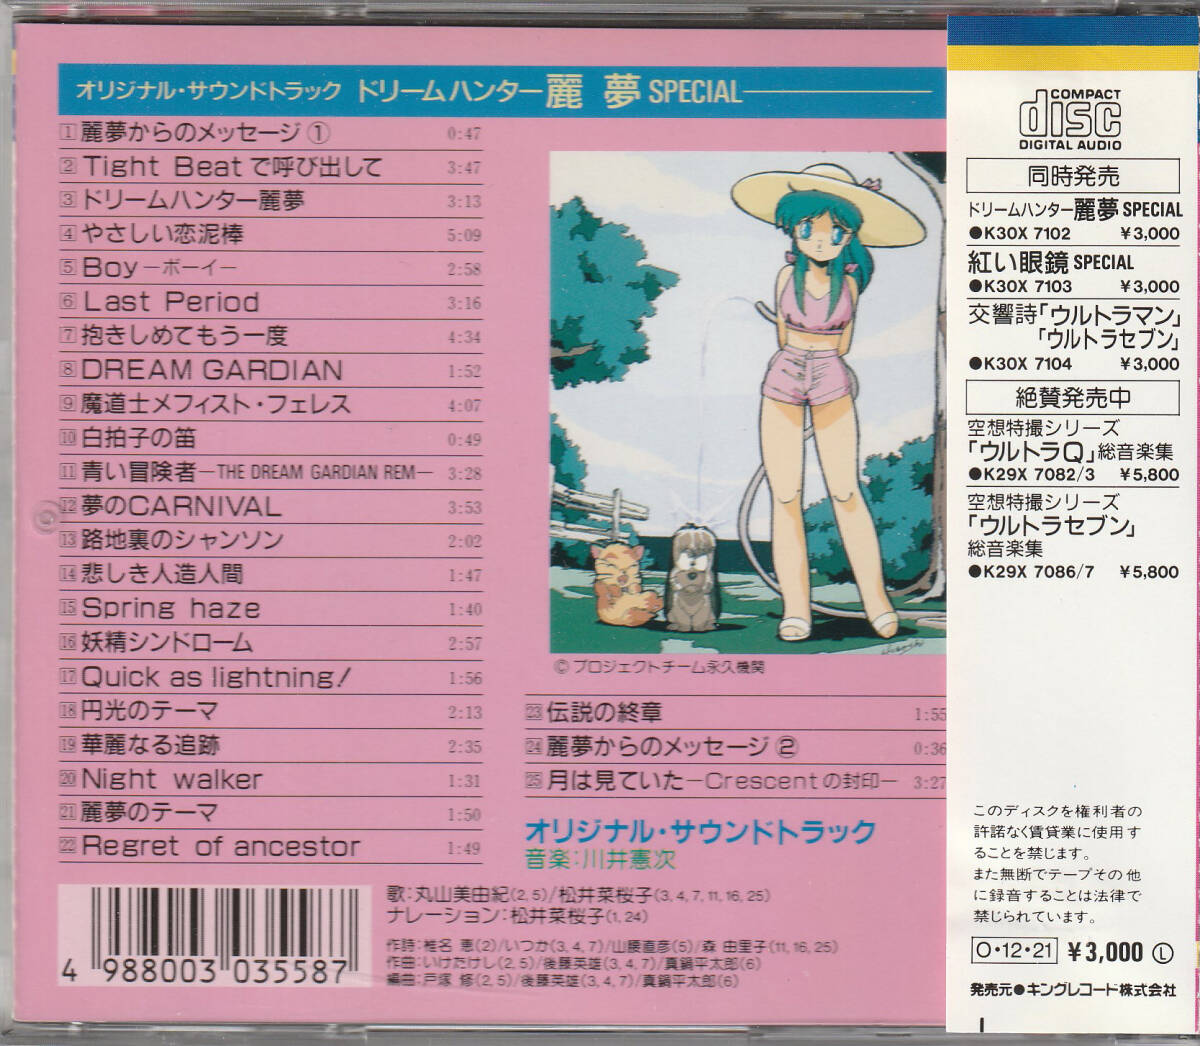 ドリームハンター麗夢 SPECIAL/オリジナル サウンドトラック(3000円帯 K30X 7102)の画像2